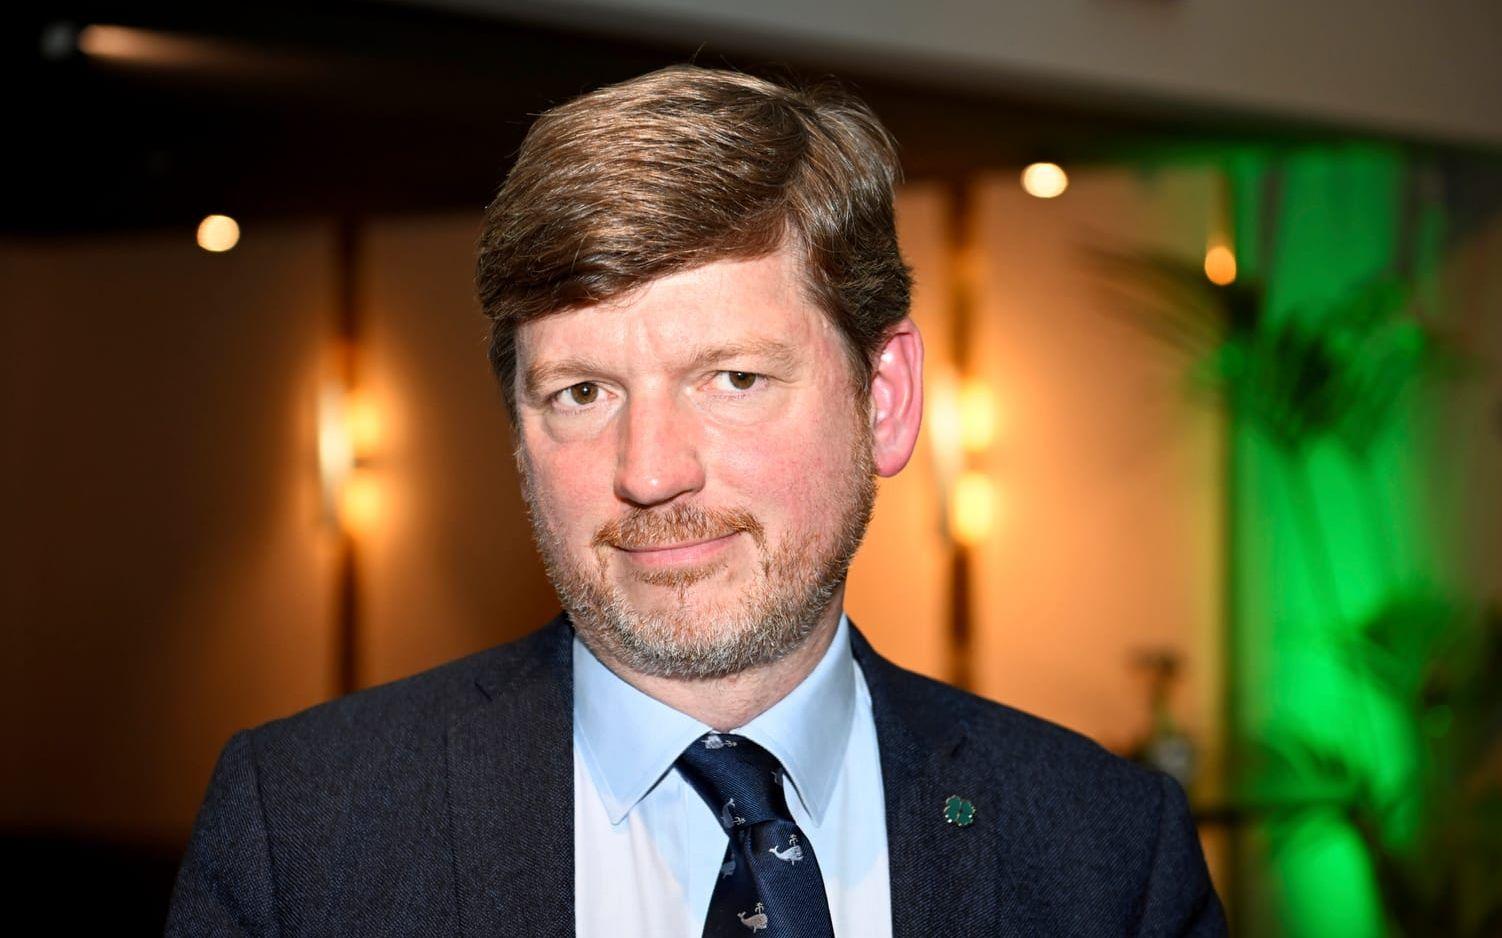 Centerpartiets ekonomisk-politisk talesperson Martin Ådahl.